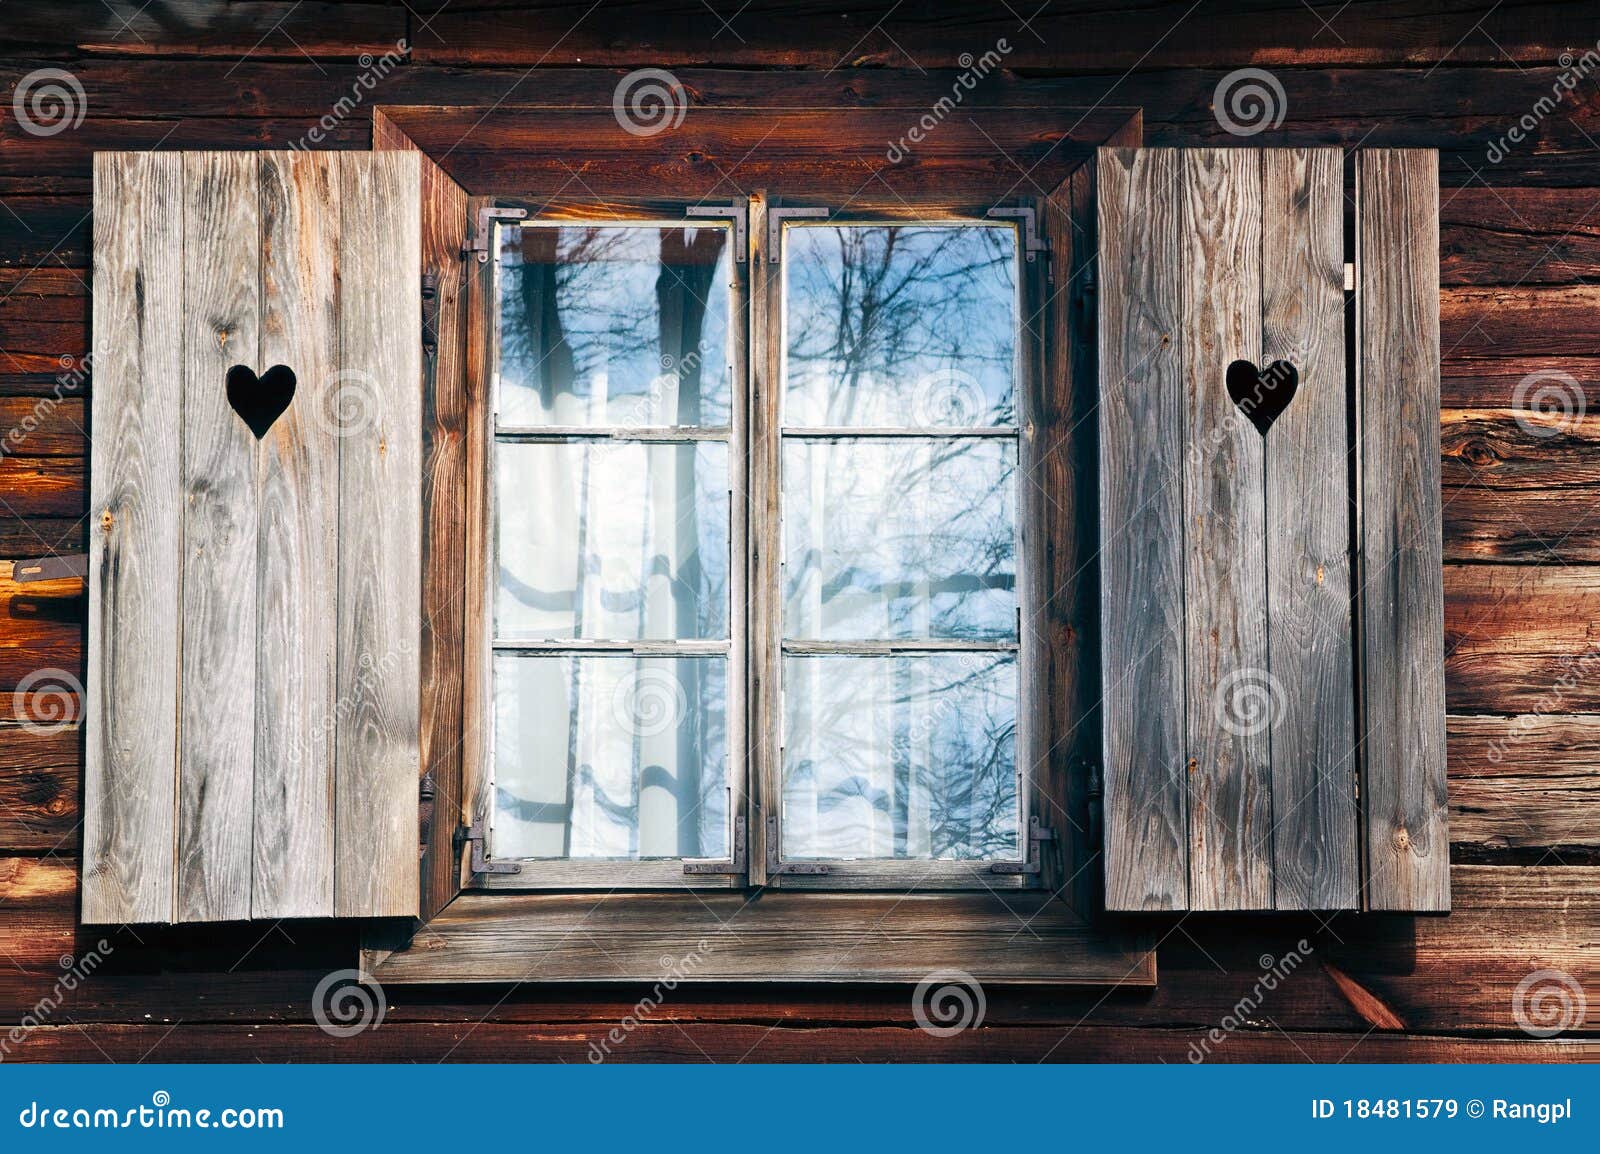 Old window shutters in wooden